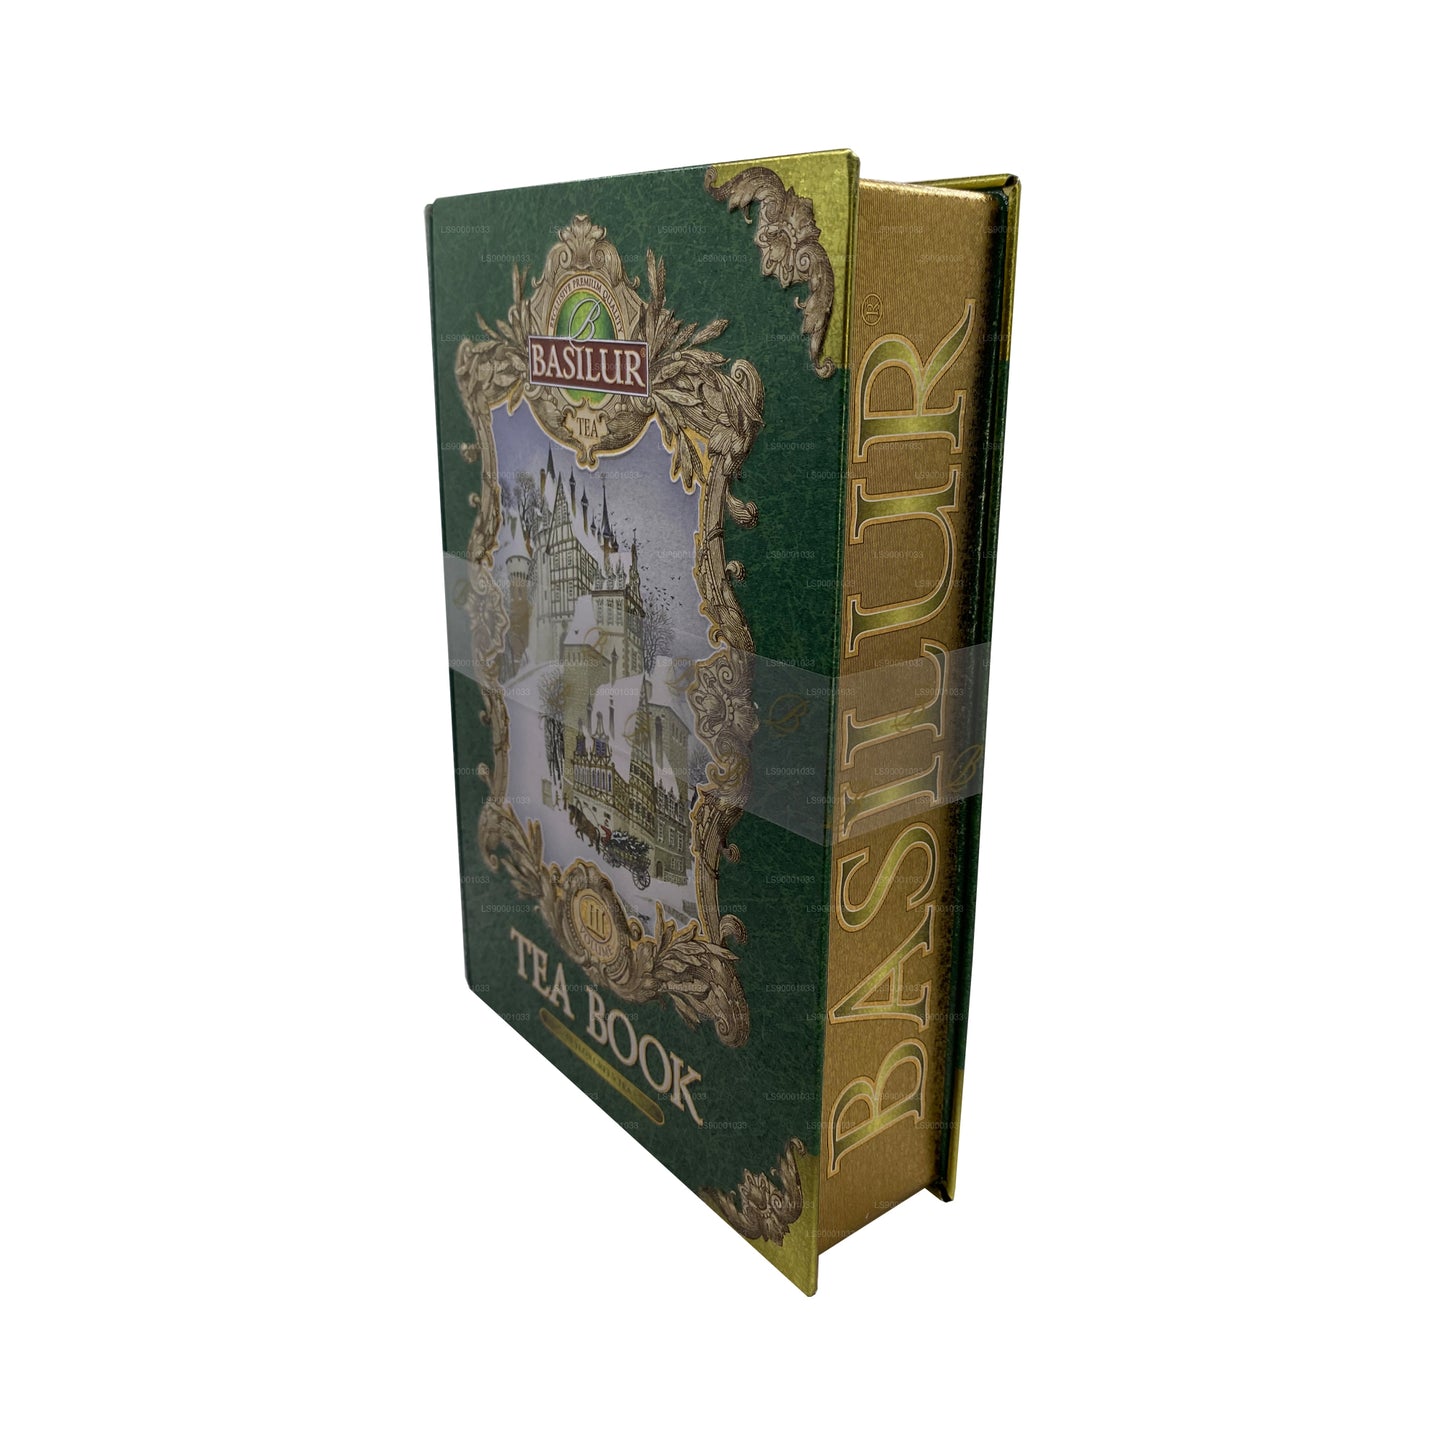 Basilur Tea Book “茶书第三卷-绿色” (100g) Caddy